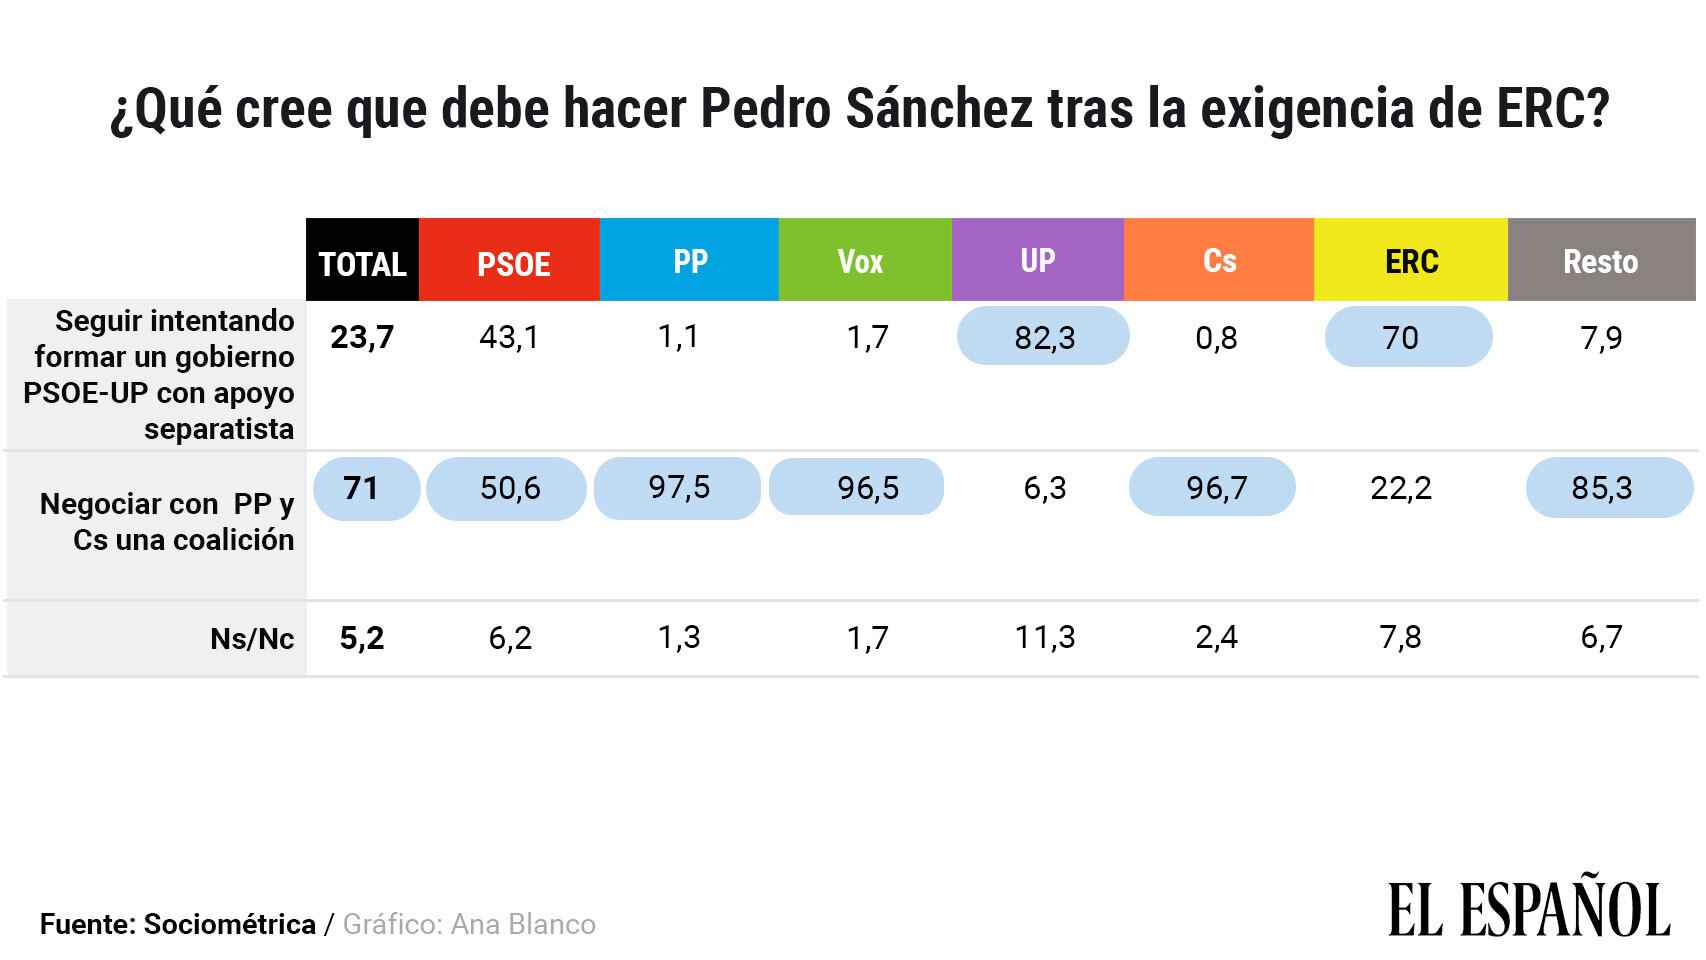 El 50,6% de los votantes del PSOE prefiere abrir negociaciones con PP y Cs.